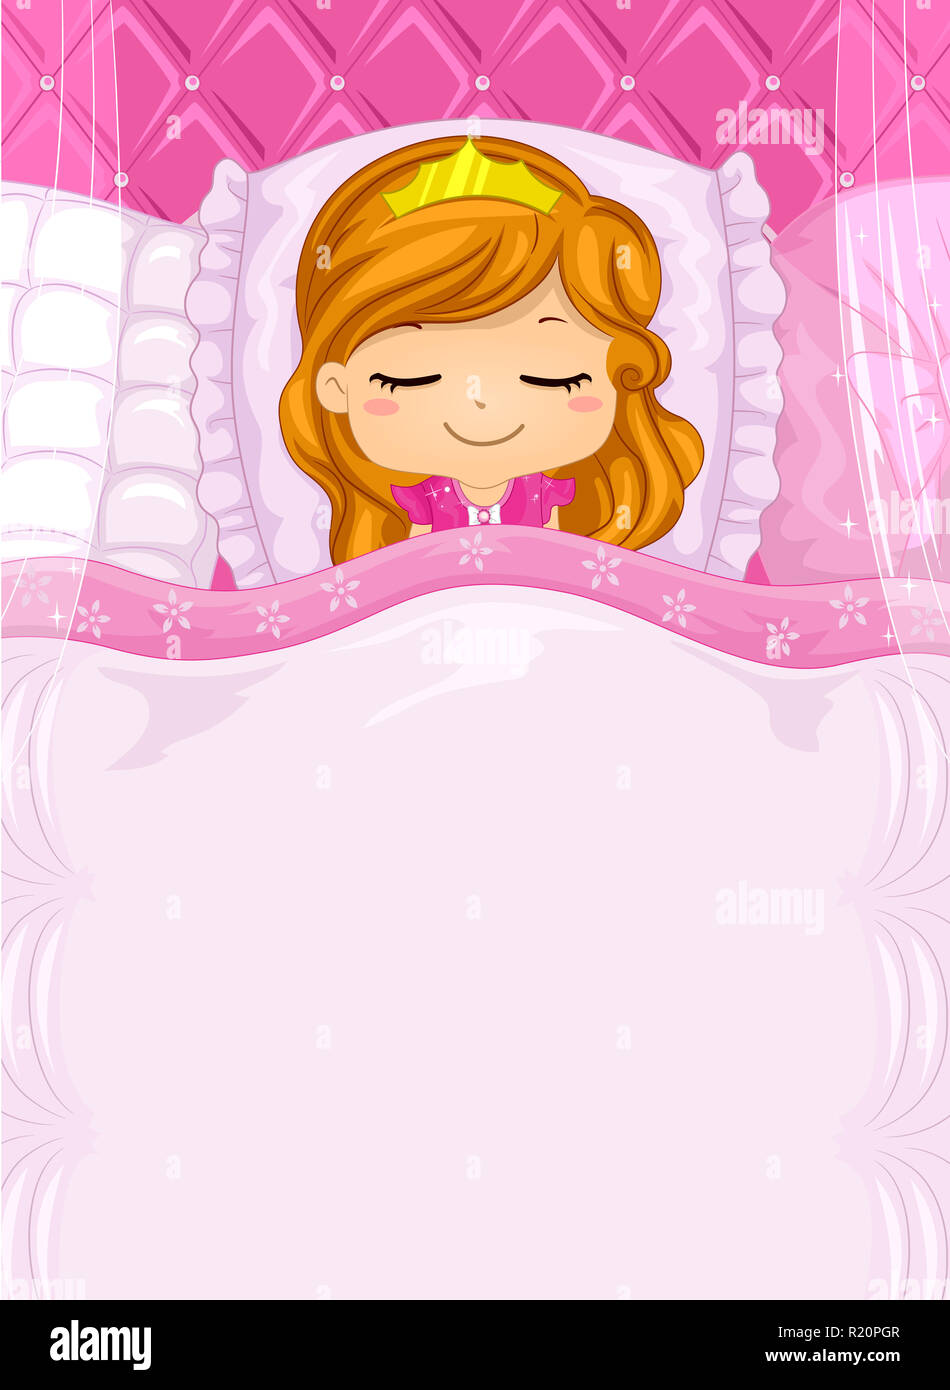 Illustration fond coloré doté d'une jolie petite fille dans un Costume Princesse dormir sur un lit de fantaisie Banque D'Images